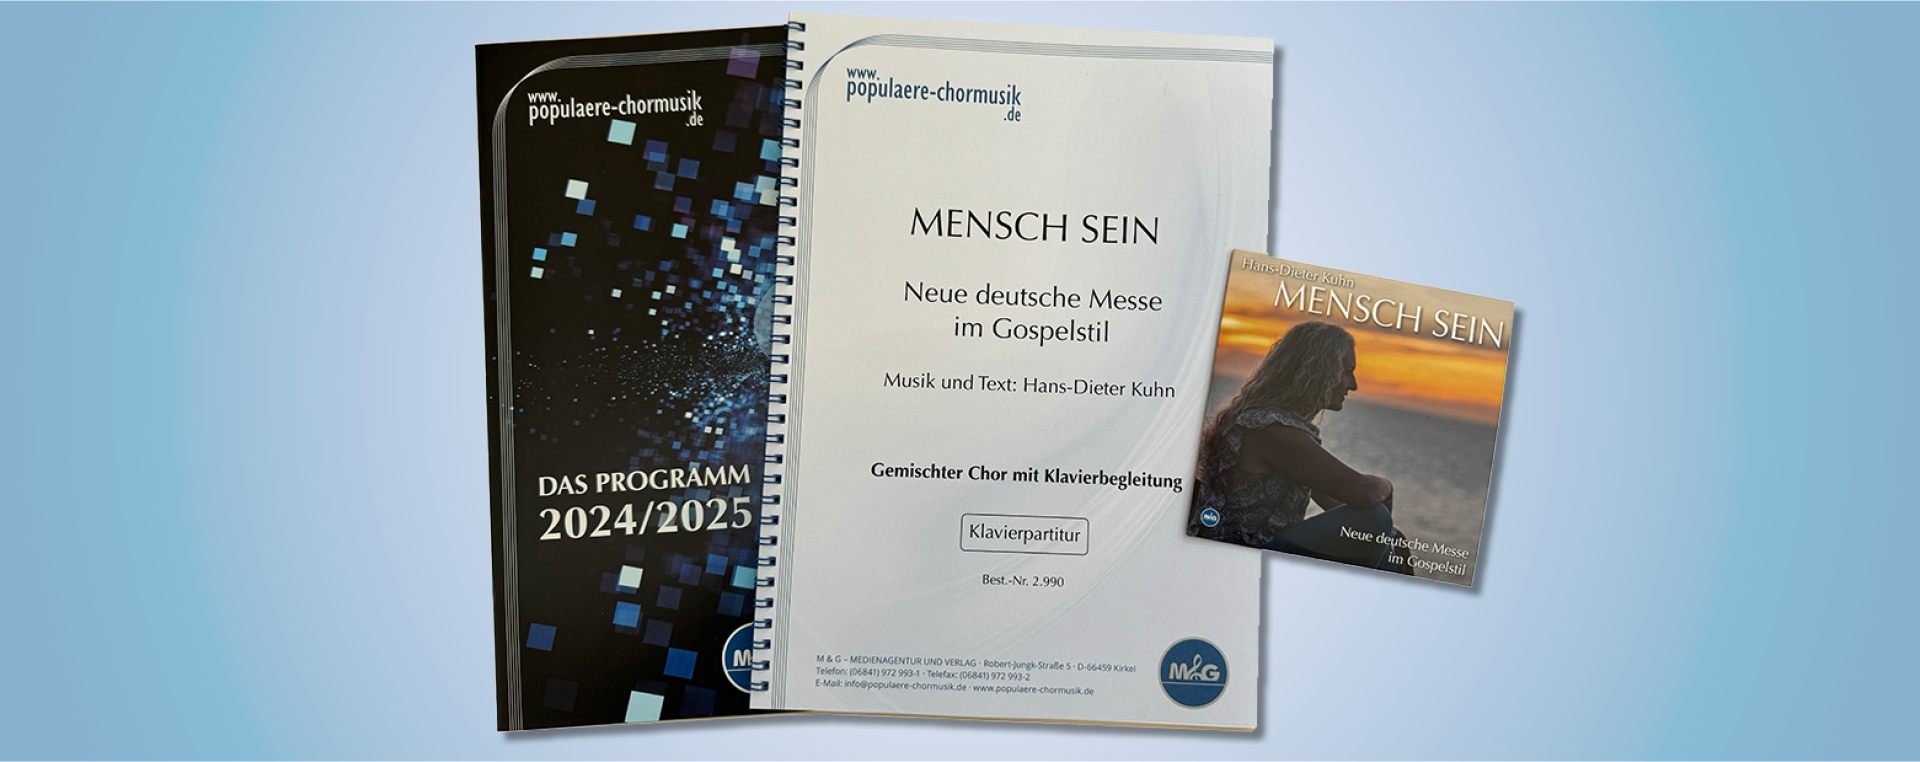 Mensch sein - neue deutsche Messe, CD und Katalog